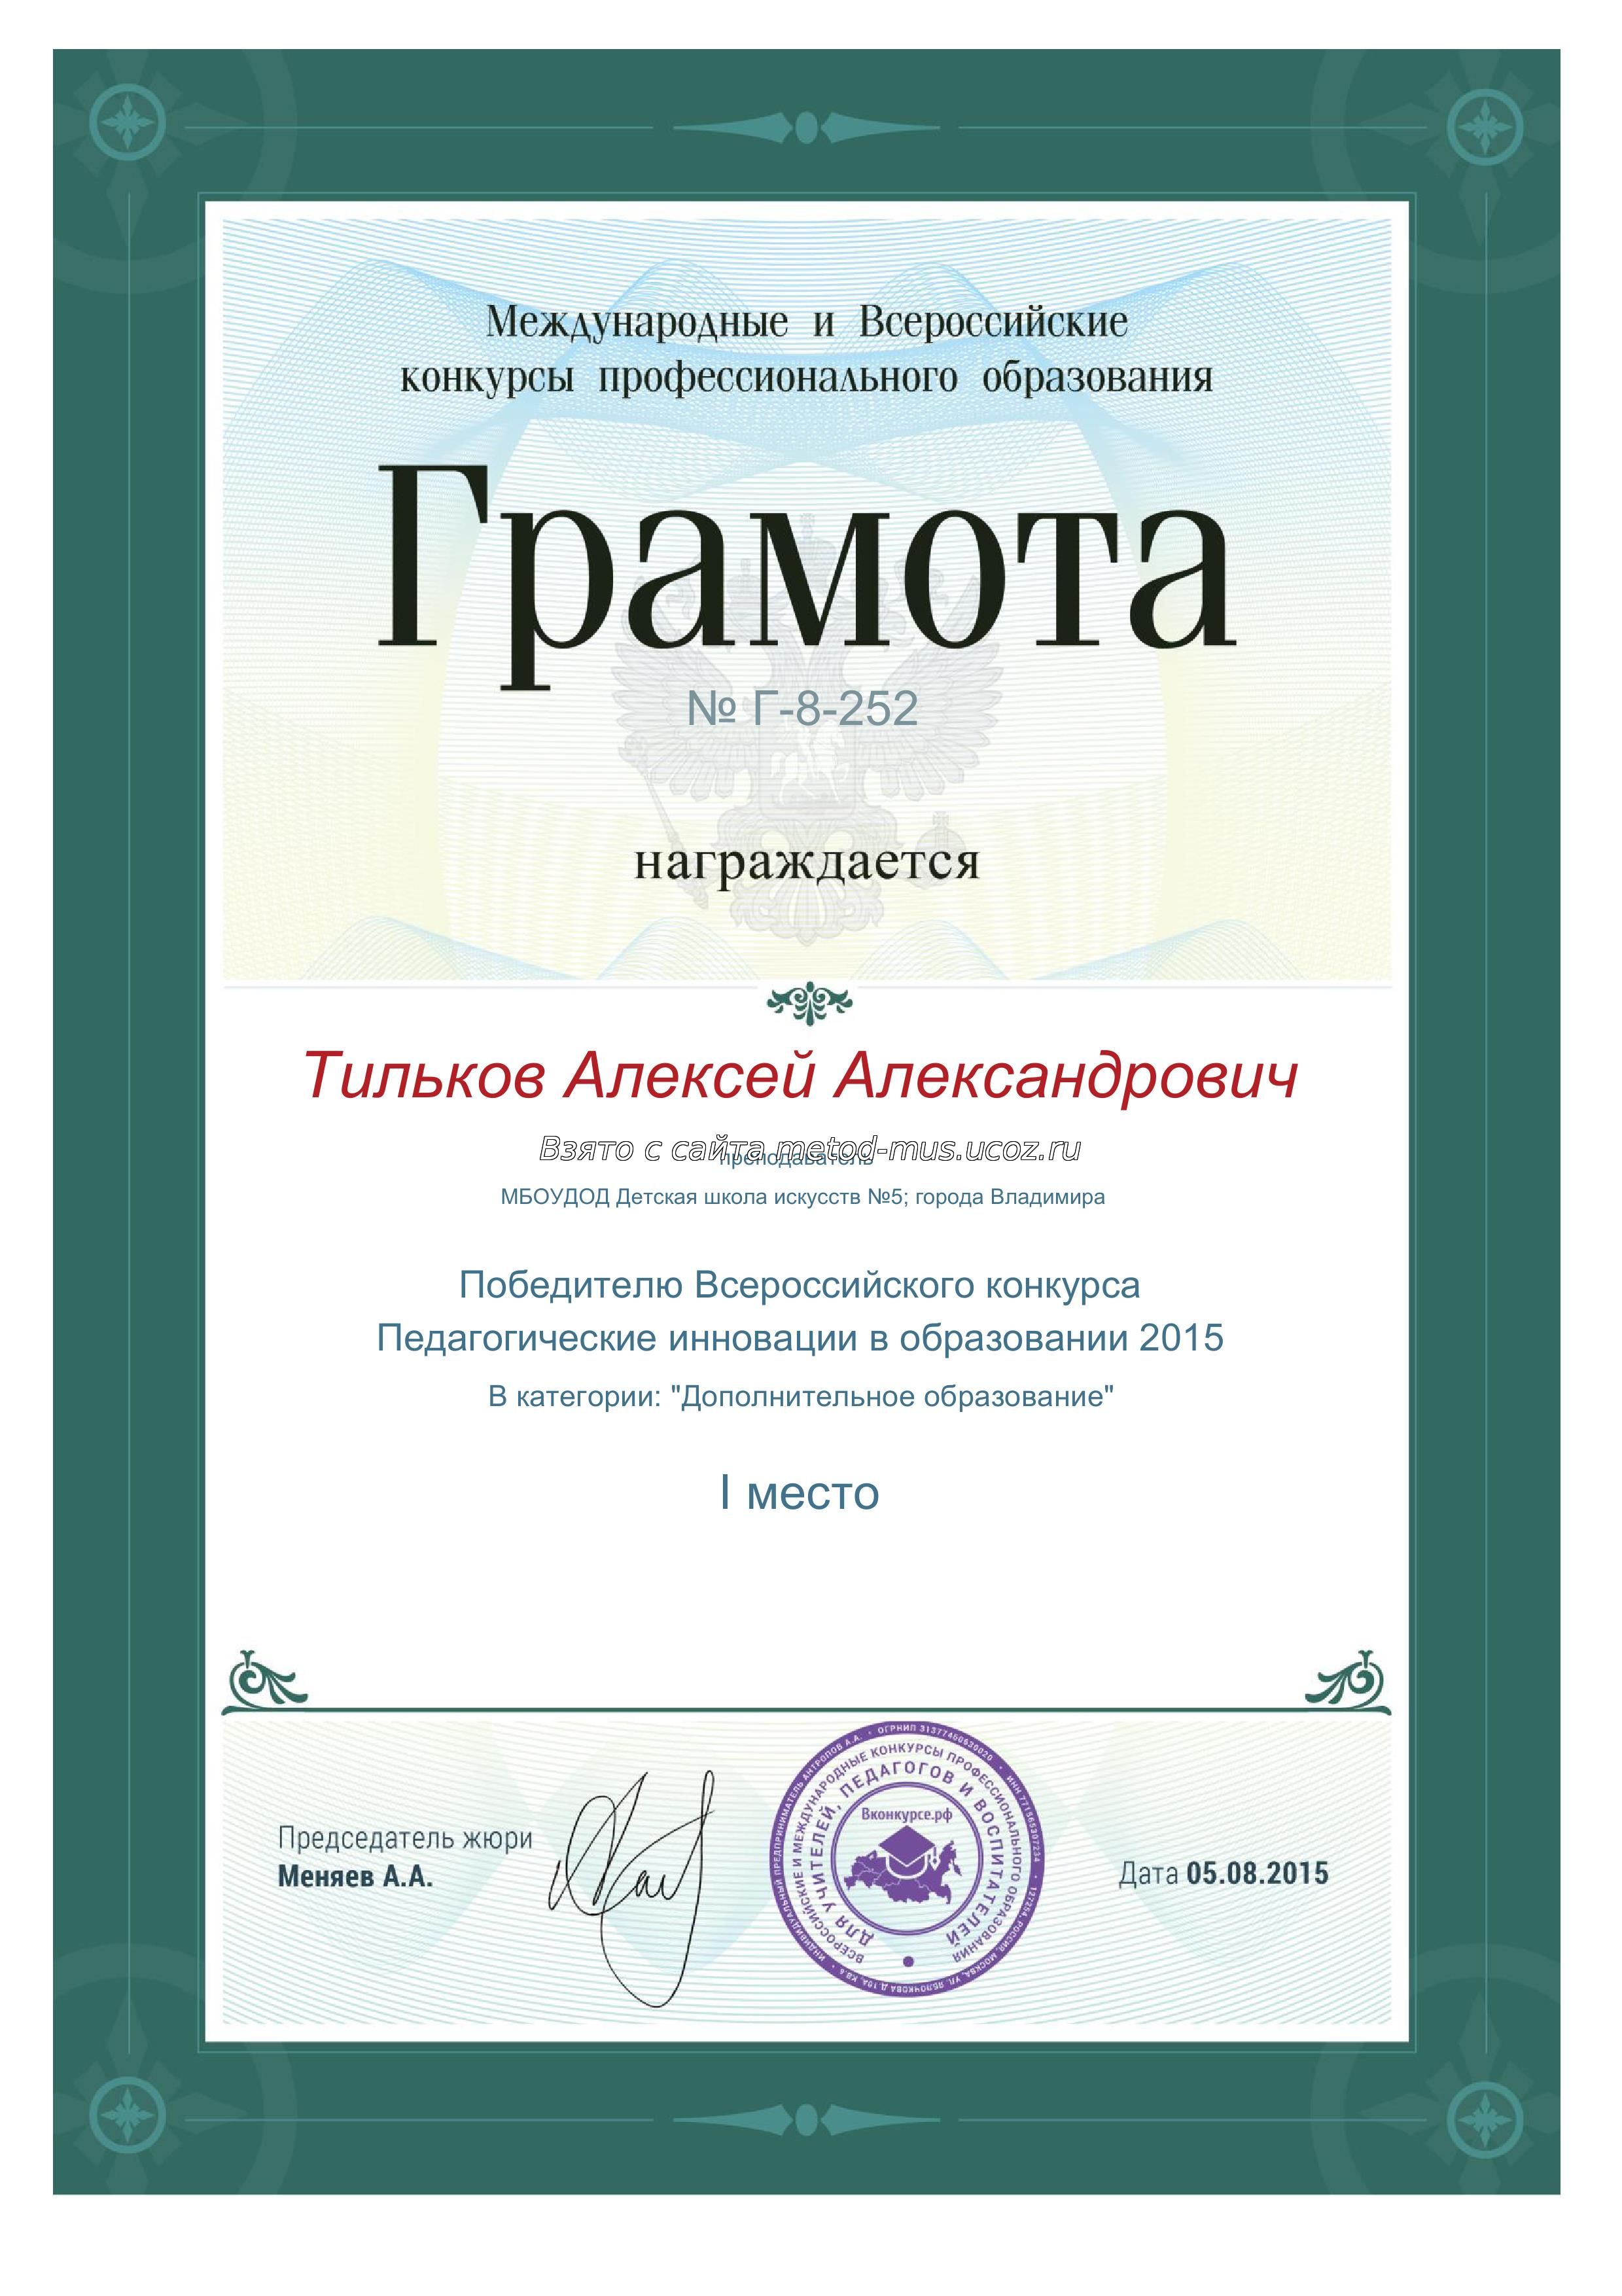 Диплом Победителя Всероссийского конкурса 'Педагогические инновации в образовании 2015'